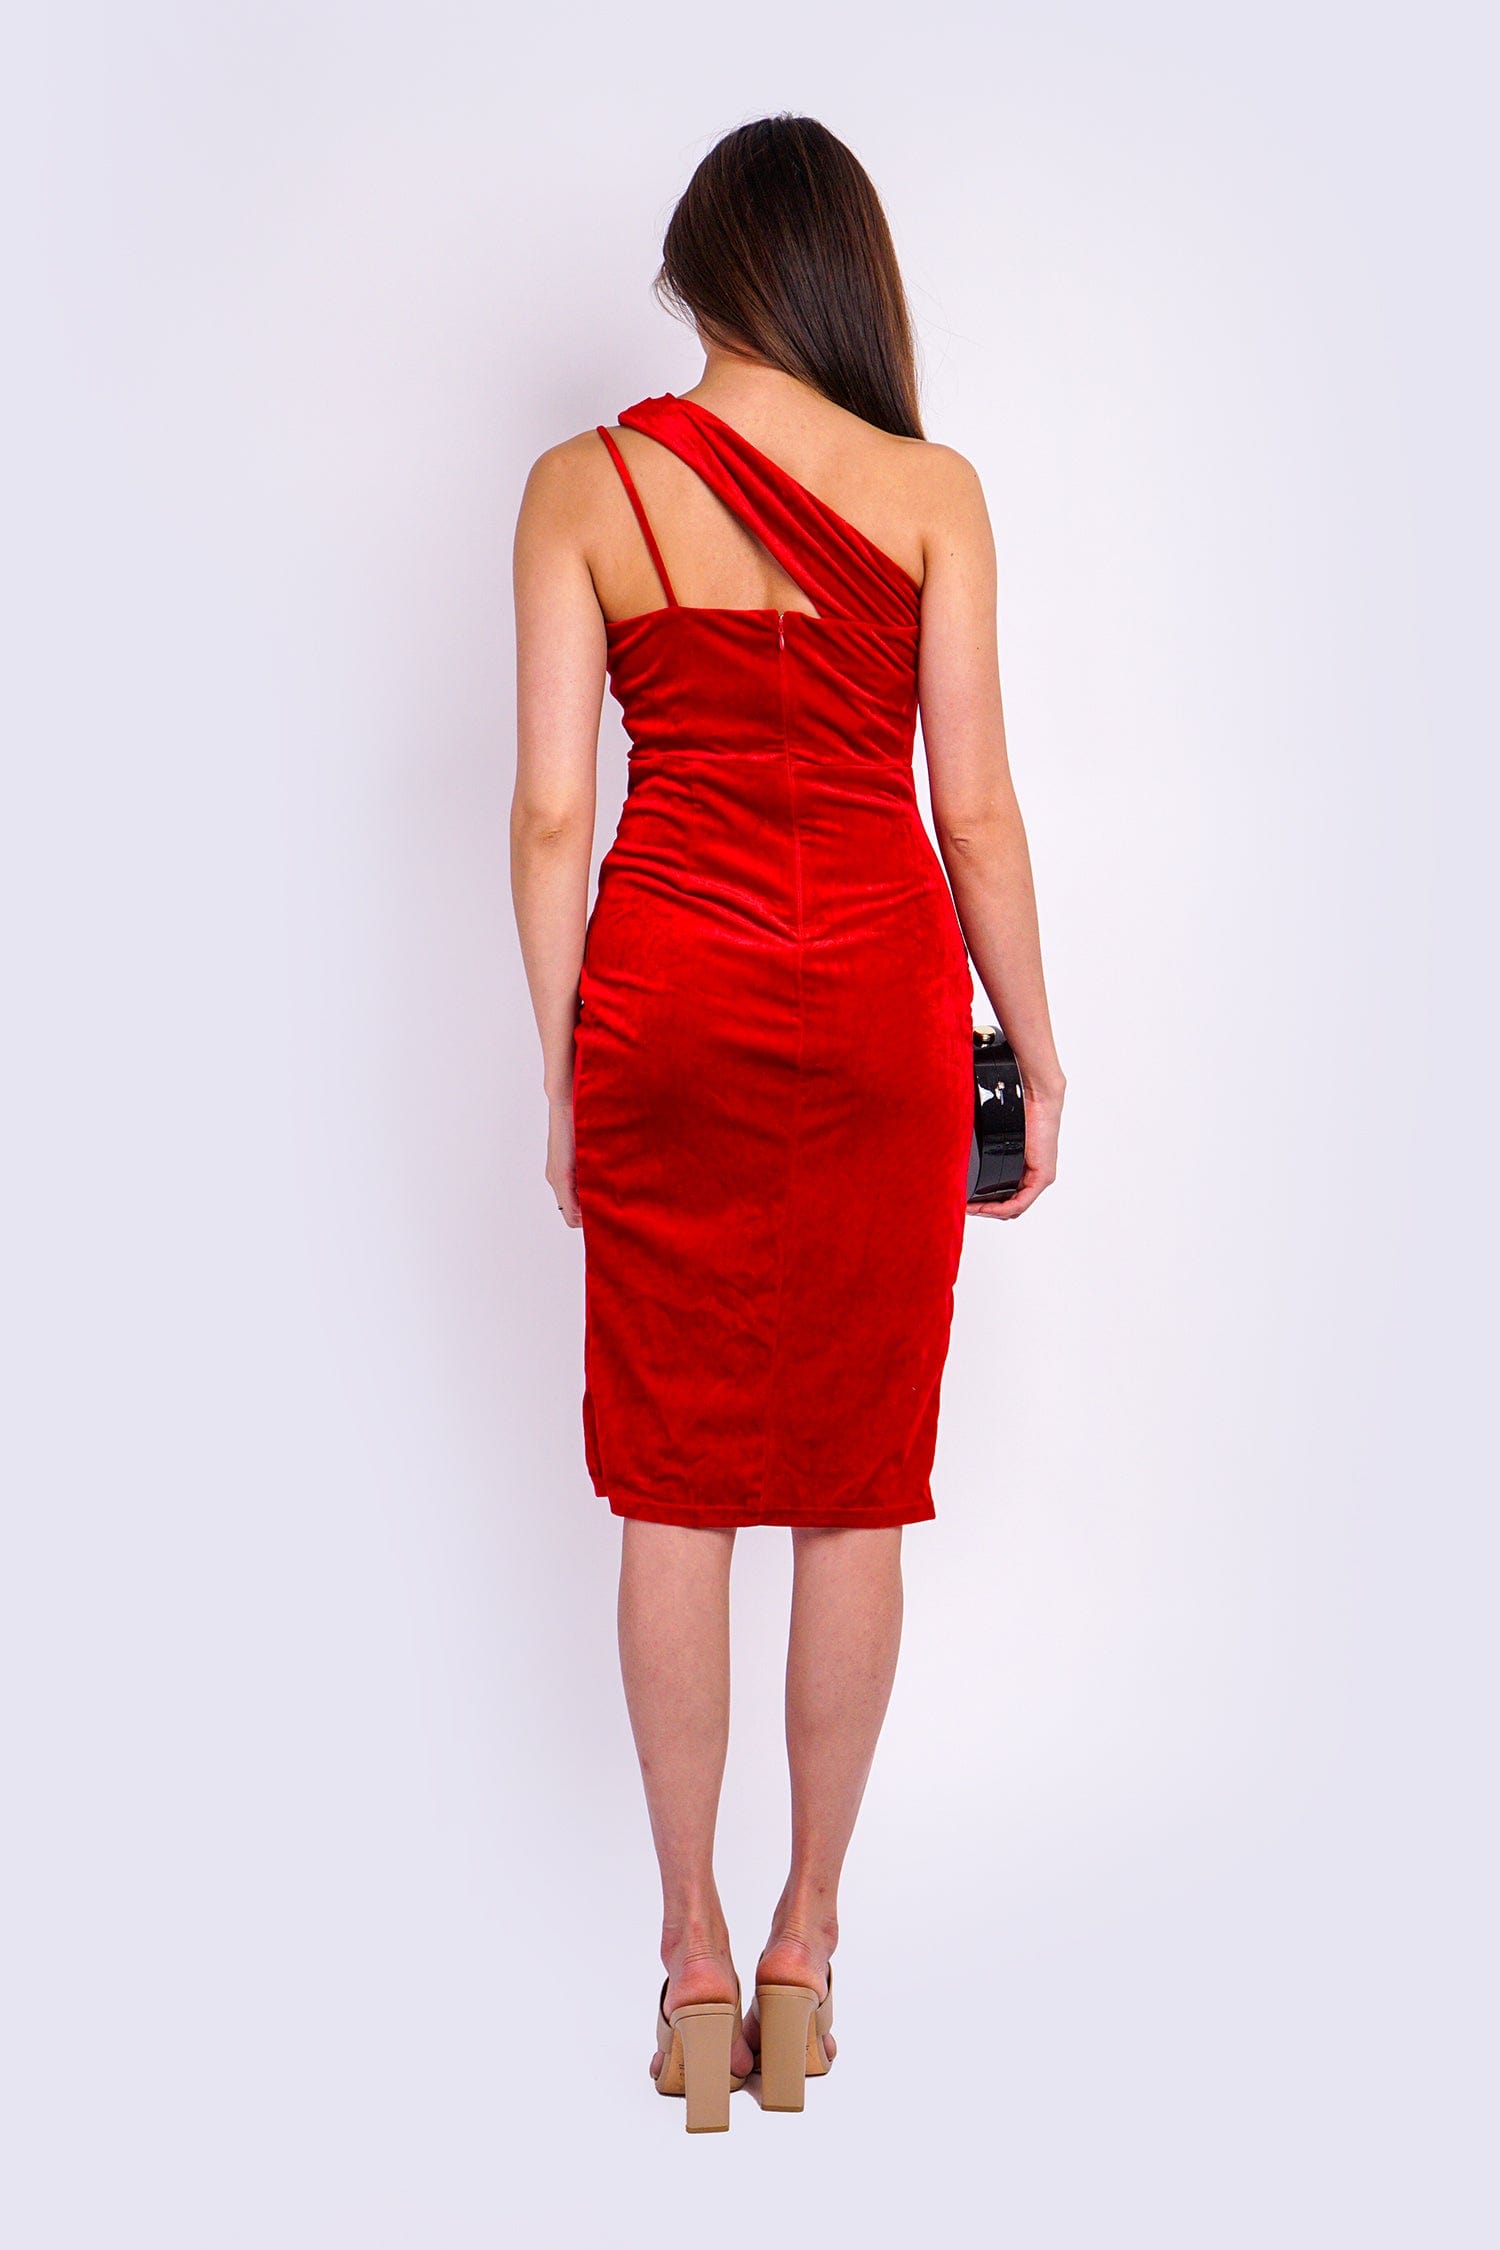 DCD DRESSES Lipstick Red One Shld Velvet Dress